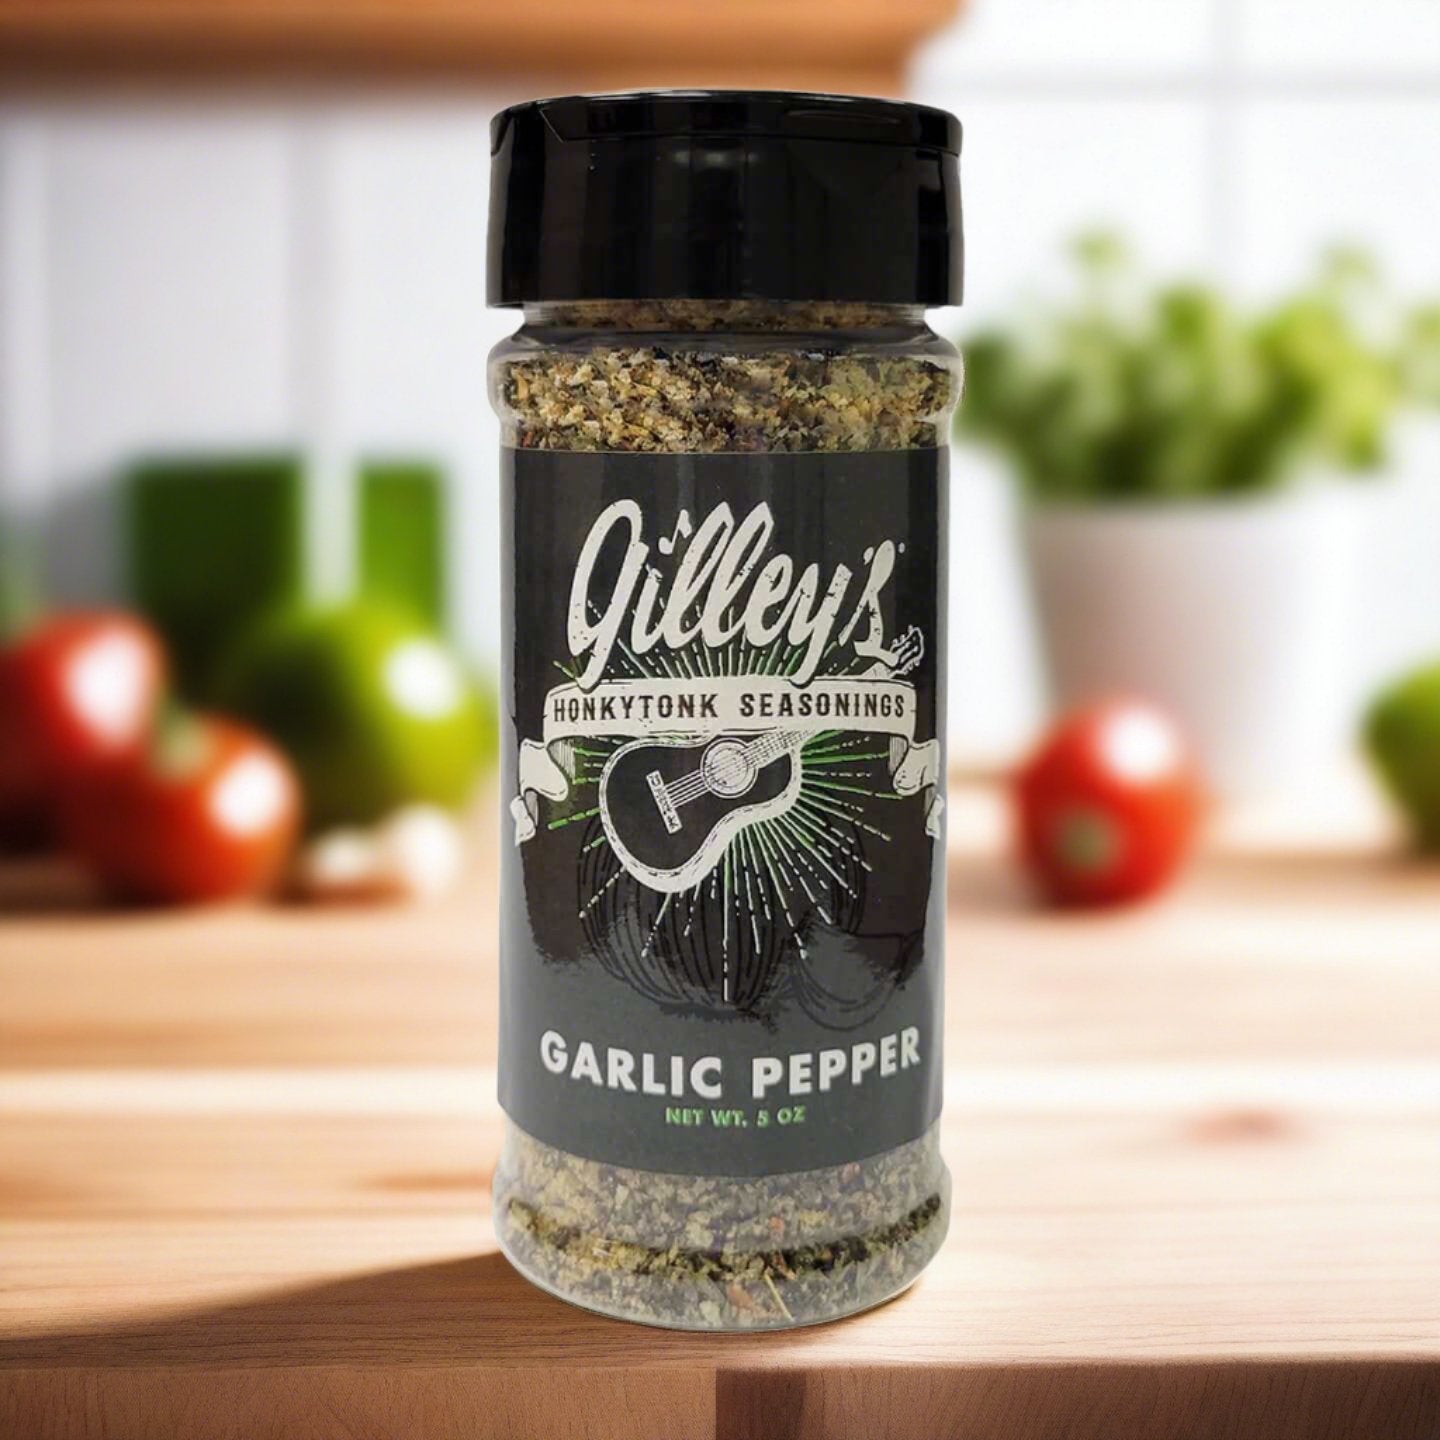 Garlic Pepper Seasoning - Gilley's Food & Beverage